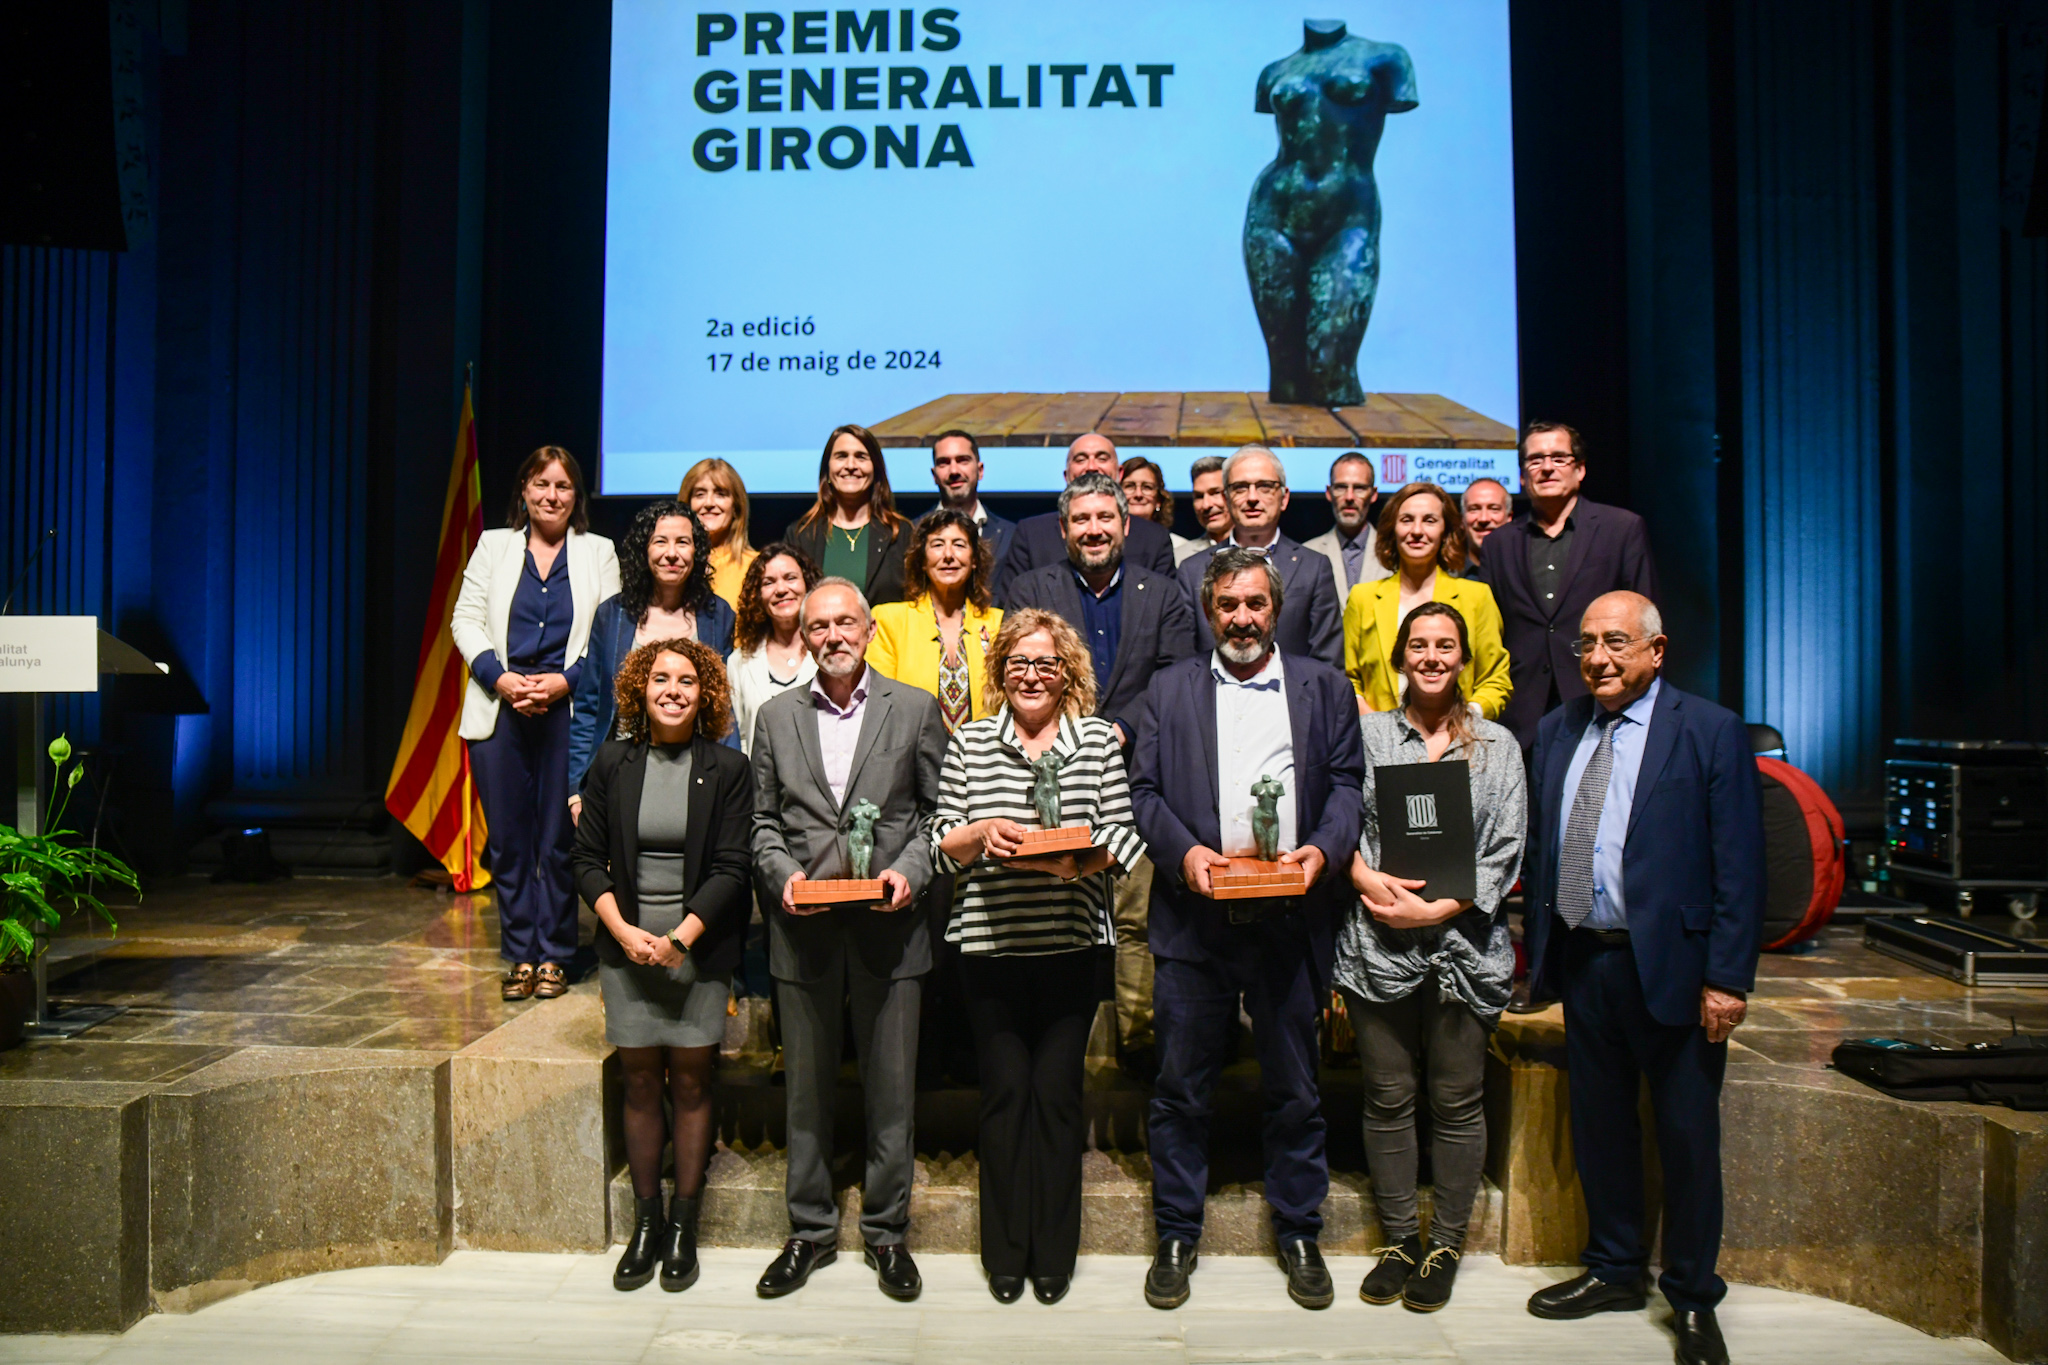 Premis Generalitat Girona 2024